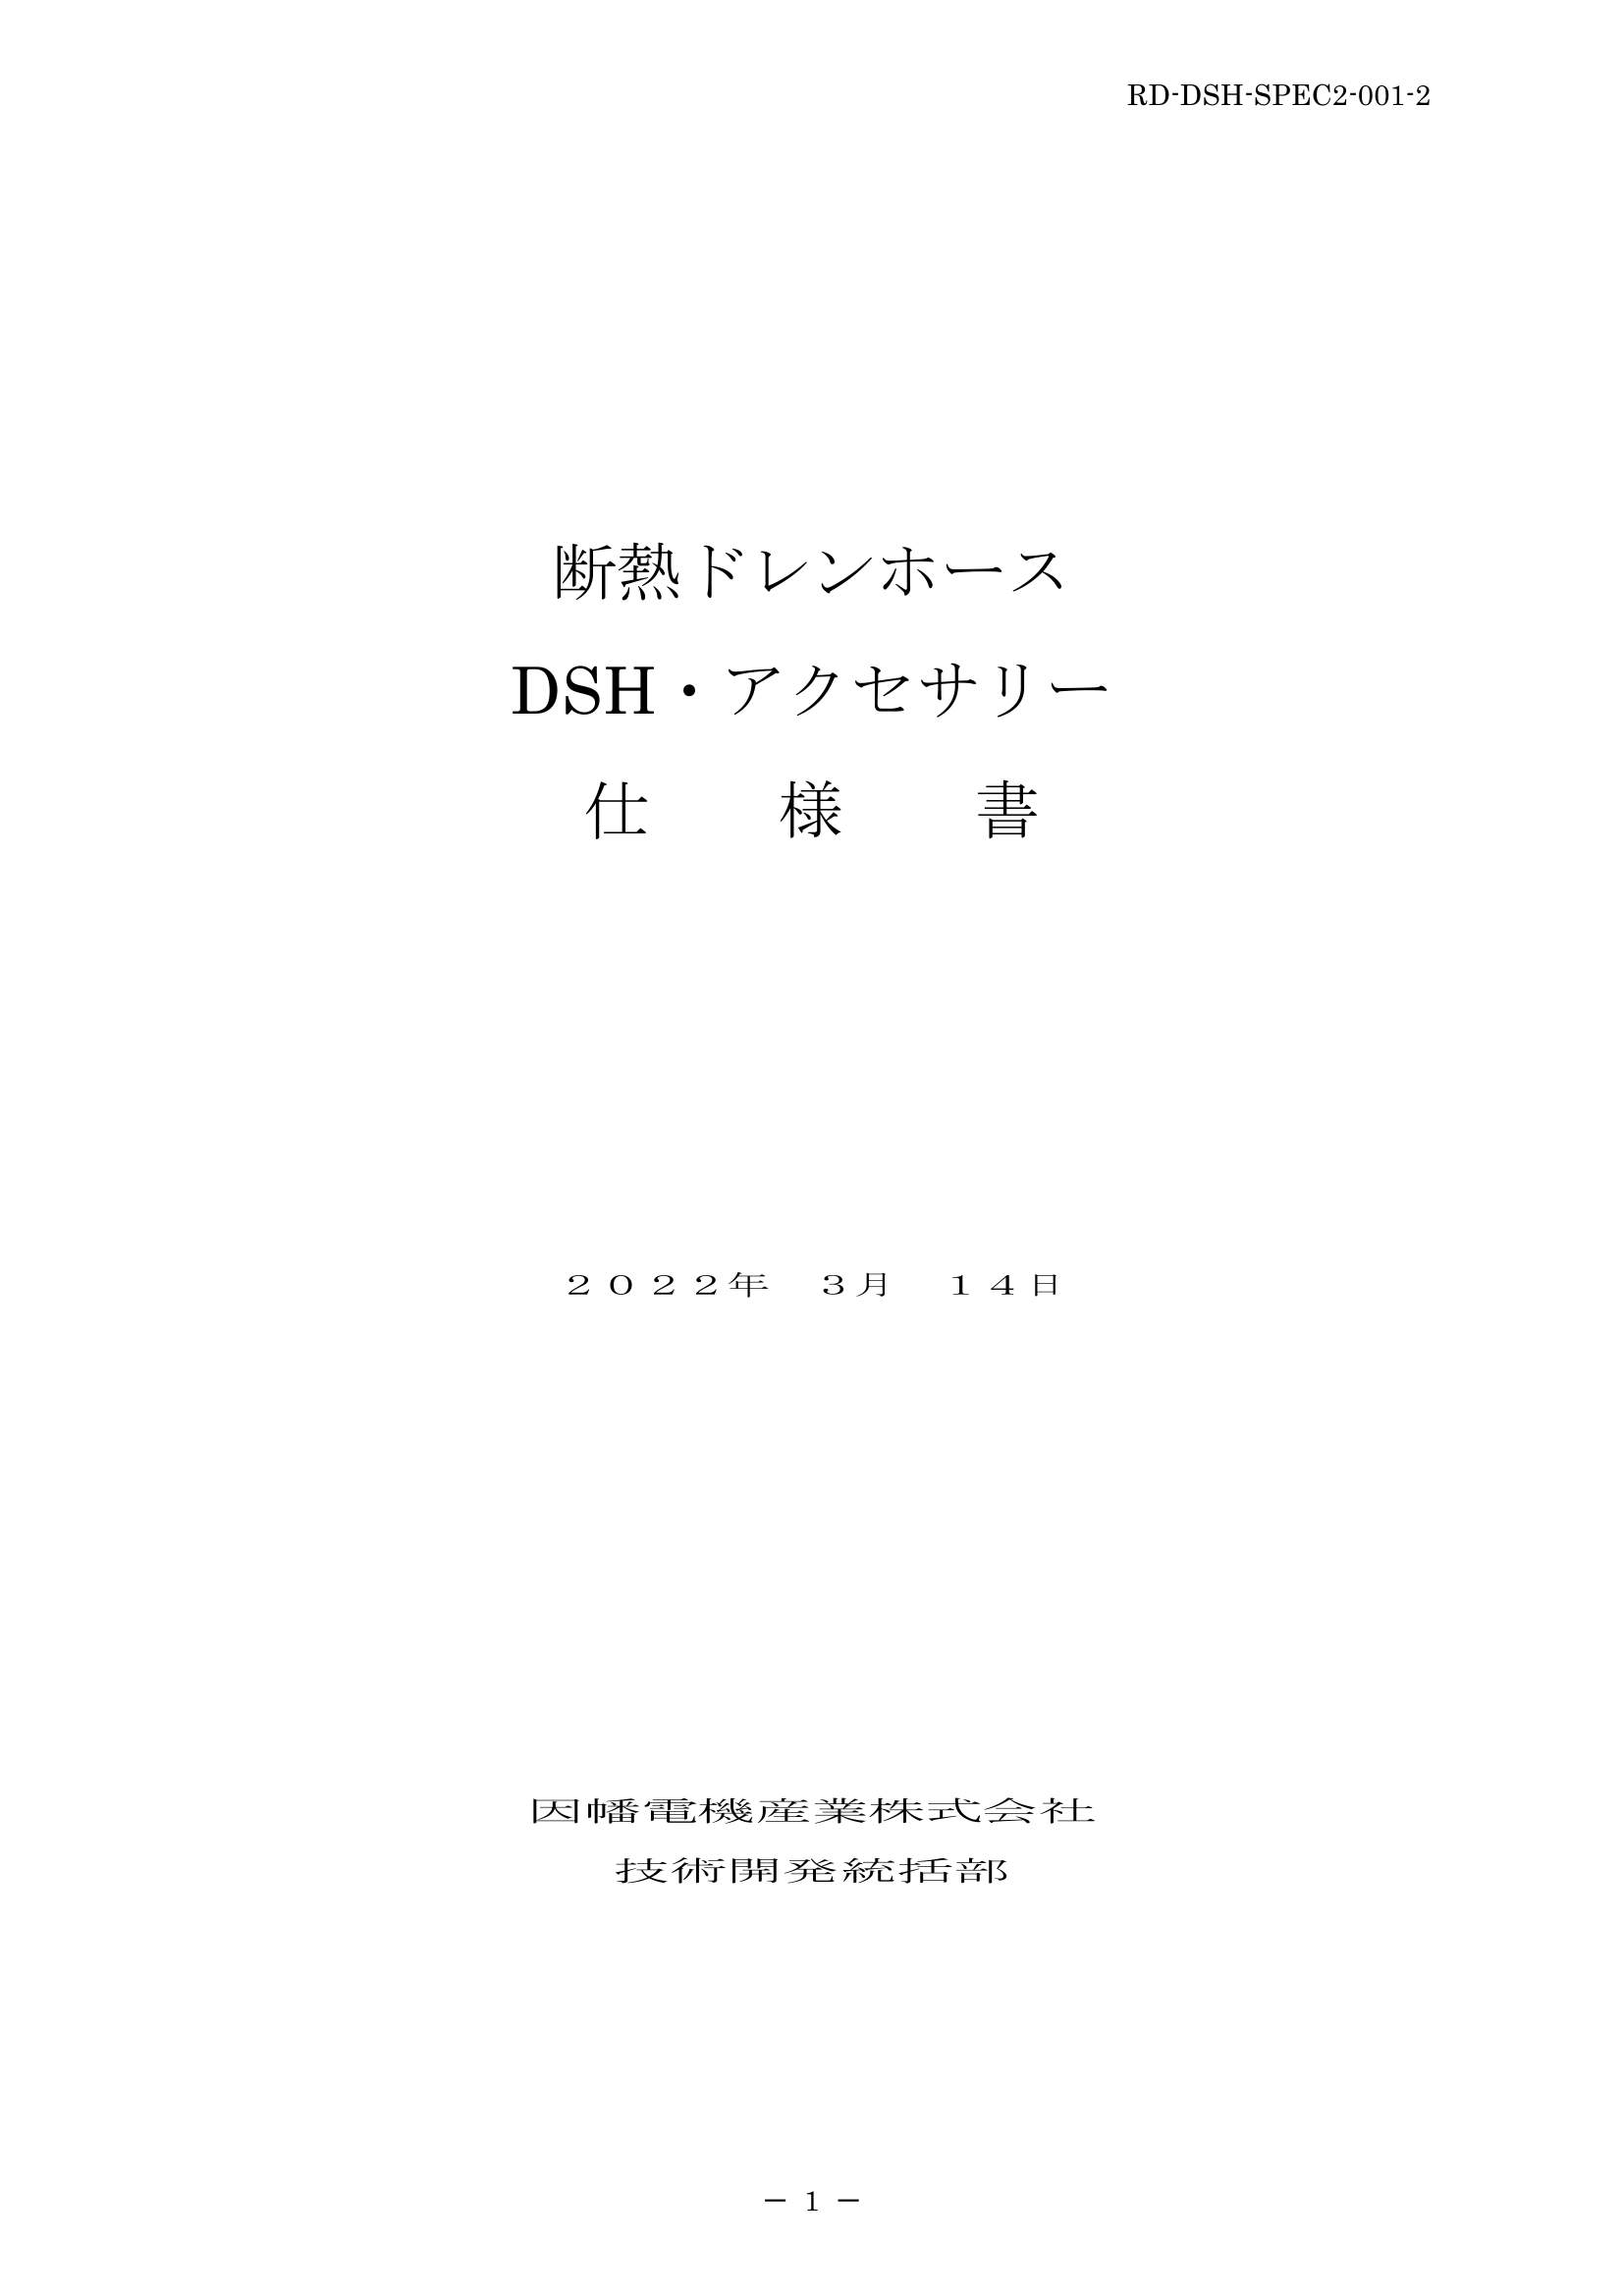 DSH_仕様書_20220314.pdf